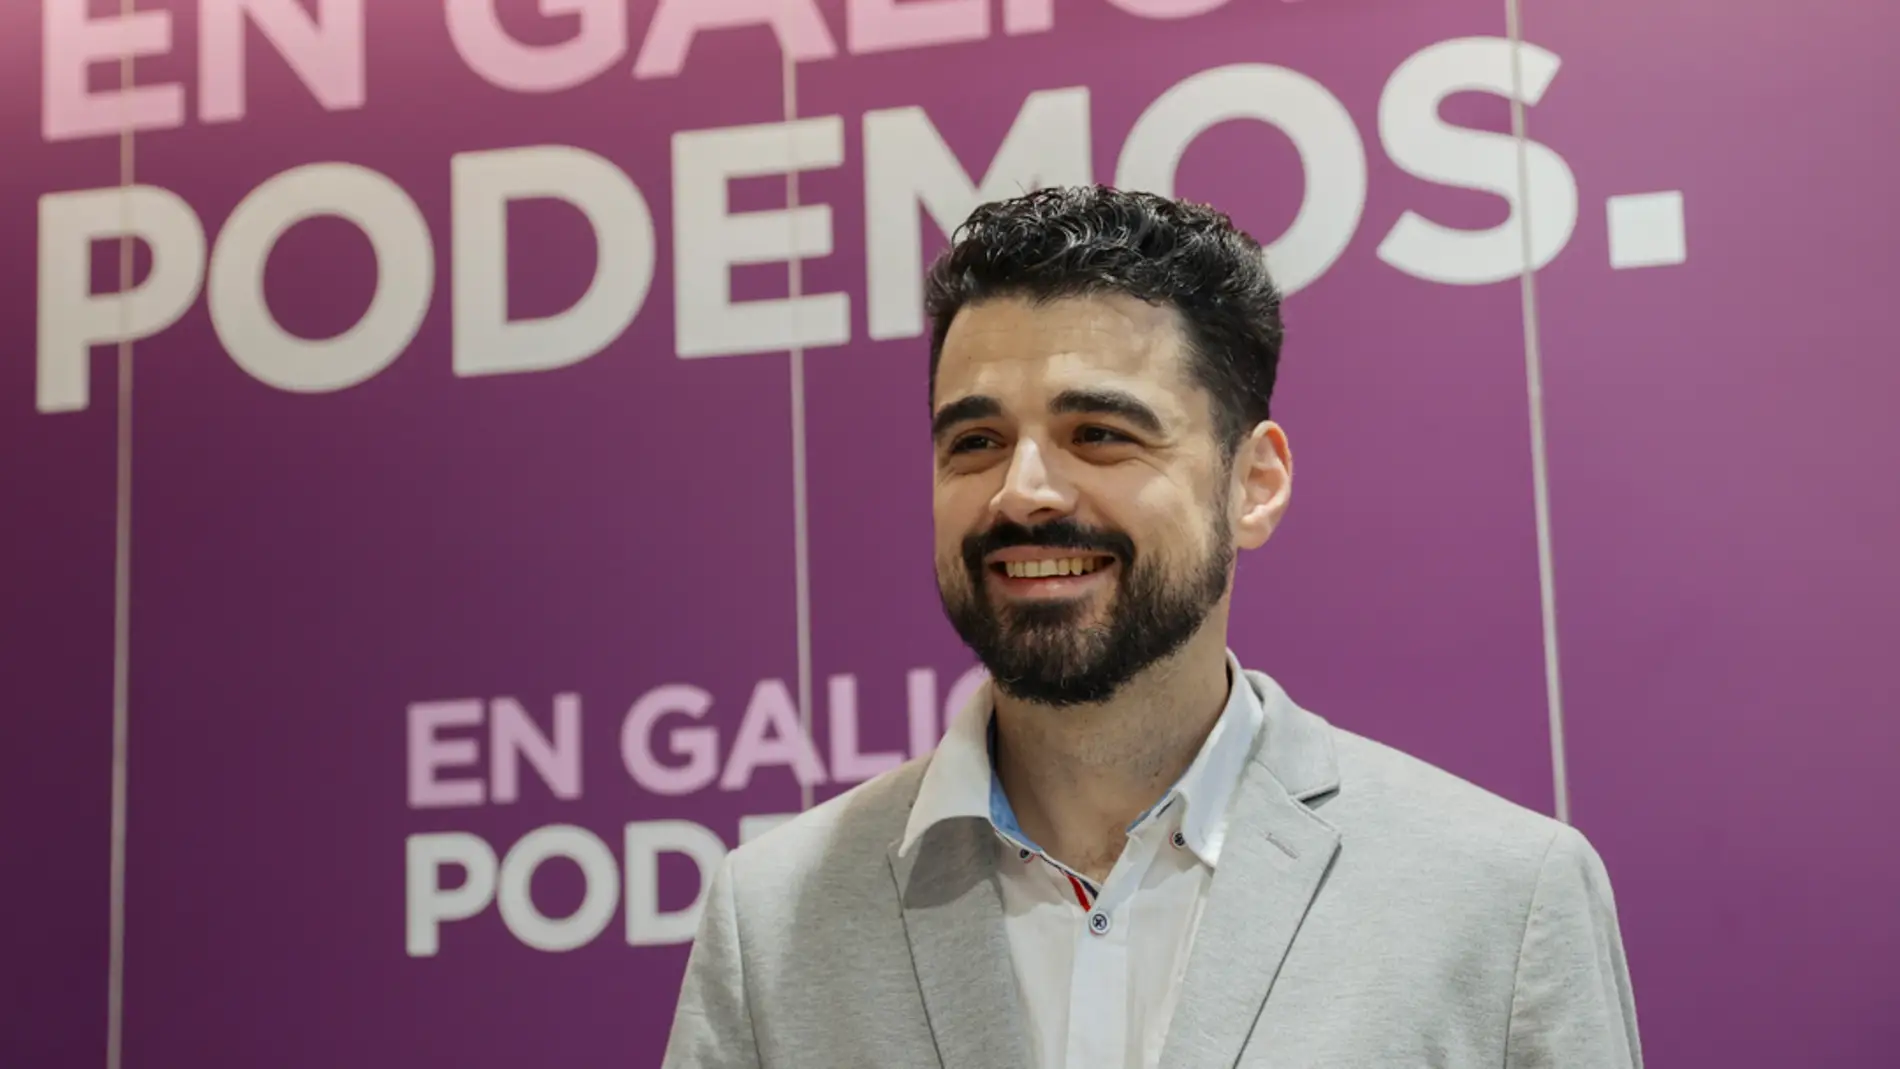 Las bases de Podemos Galicia obedecen a Iglesias y rechazan ir en coalición con Sumar para las elecciones